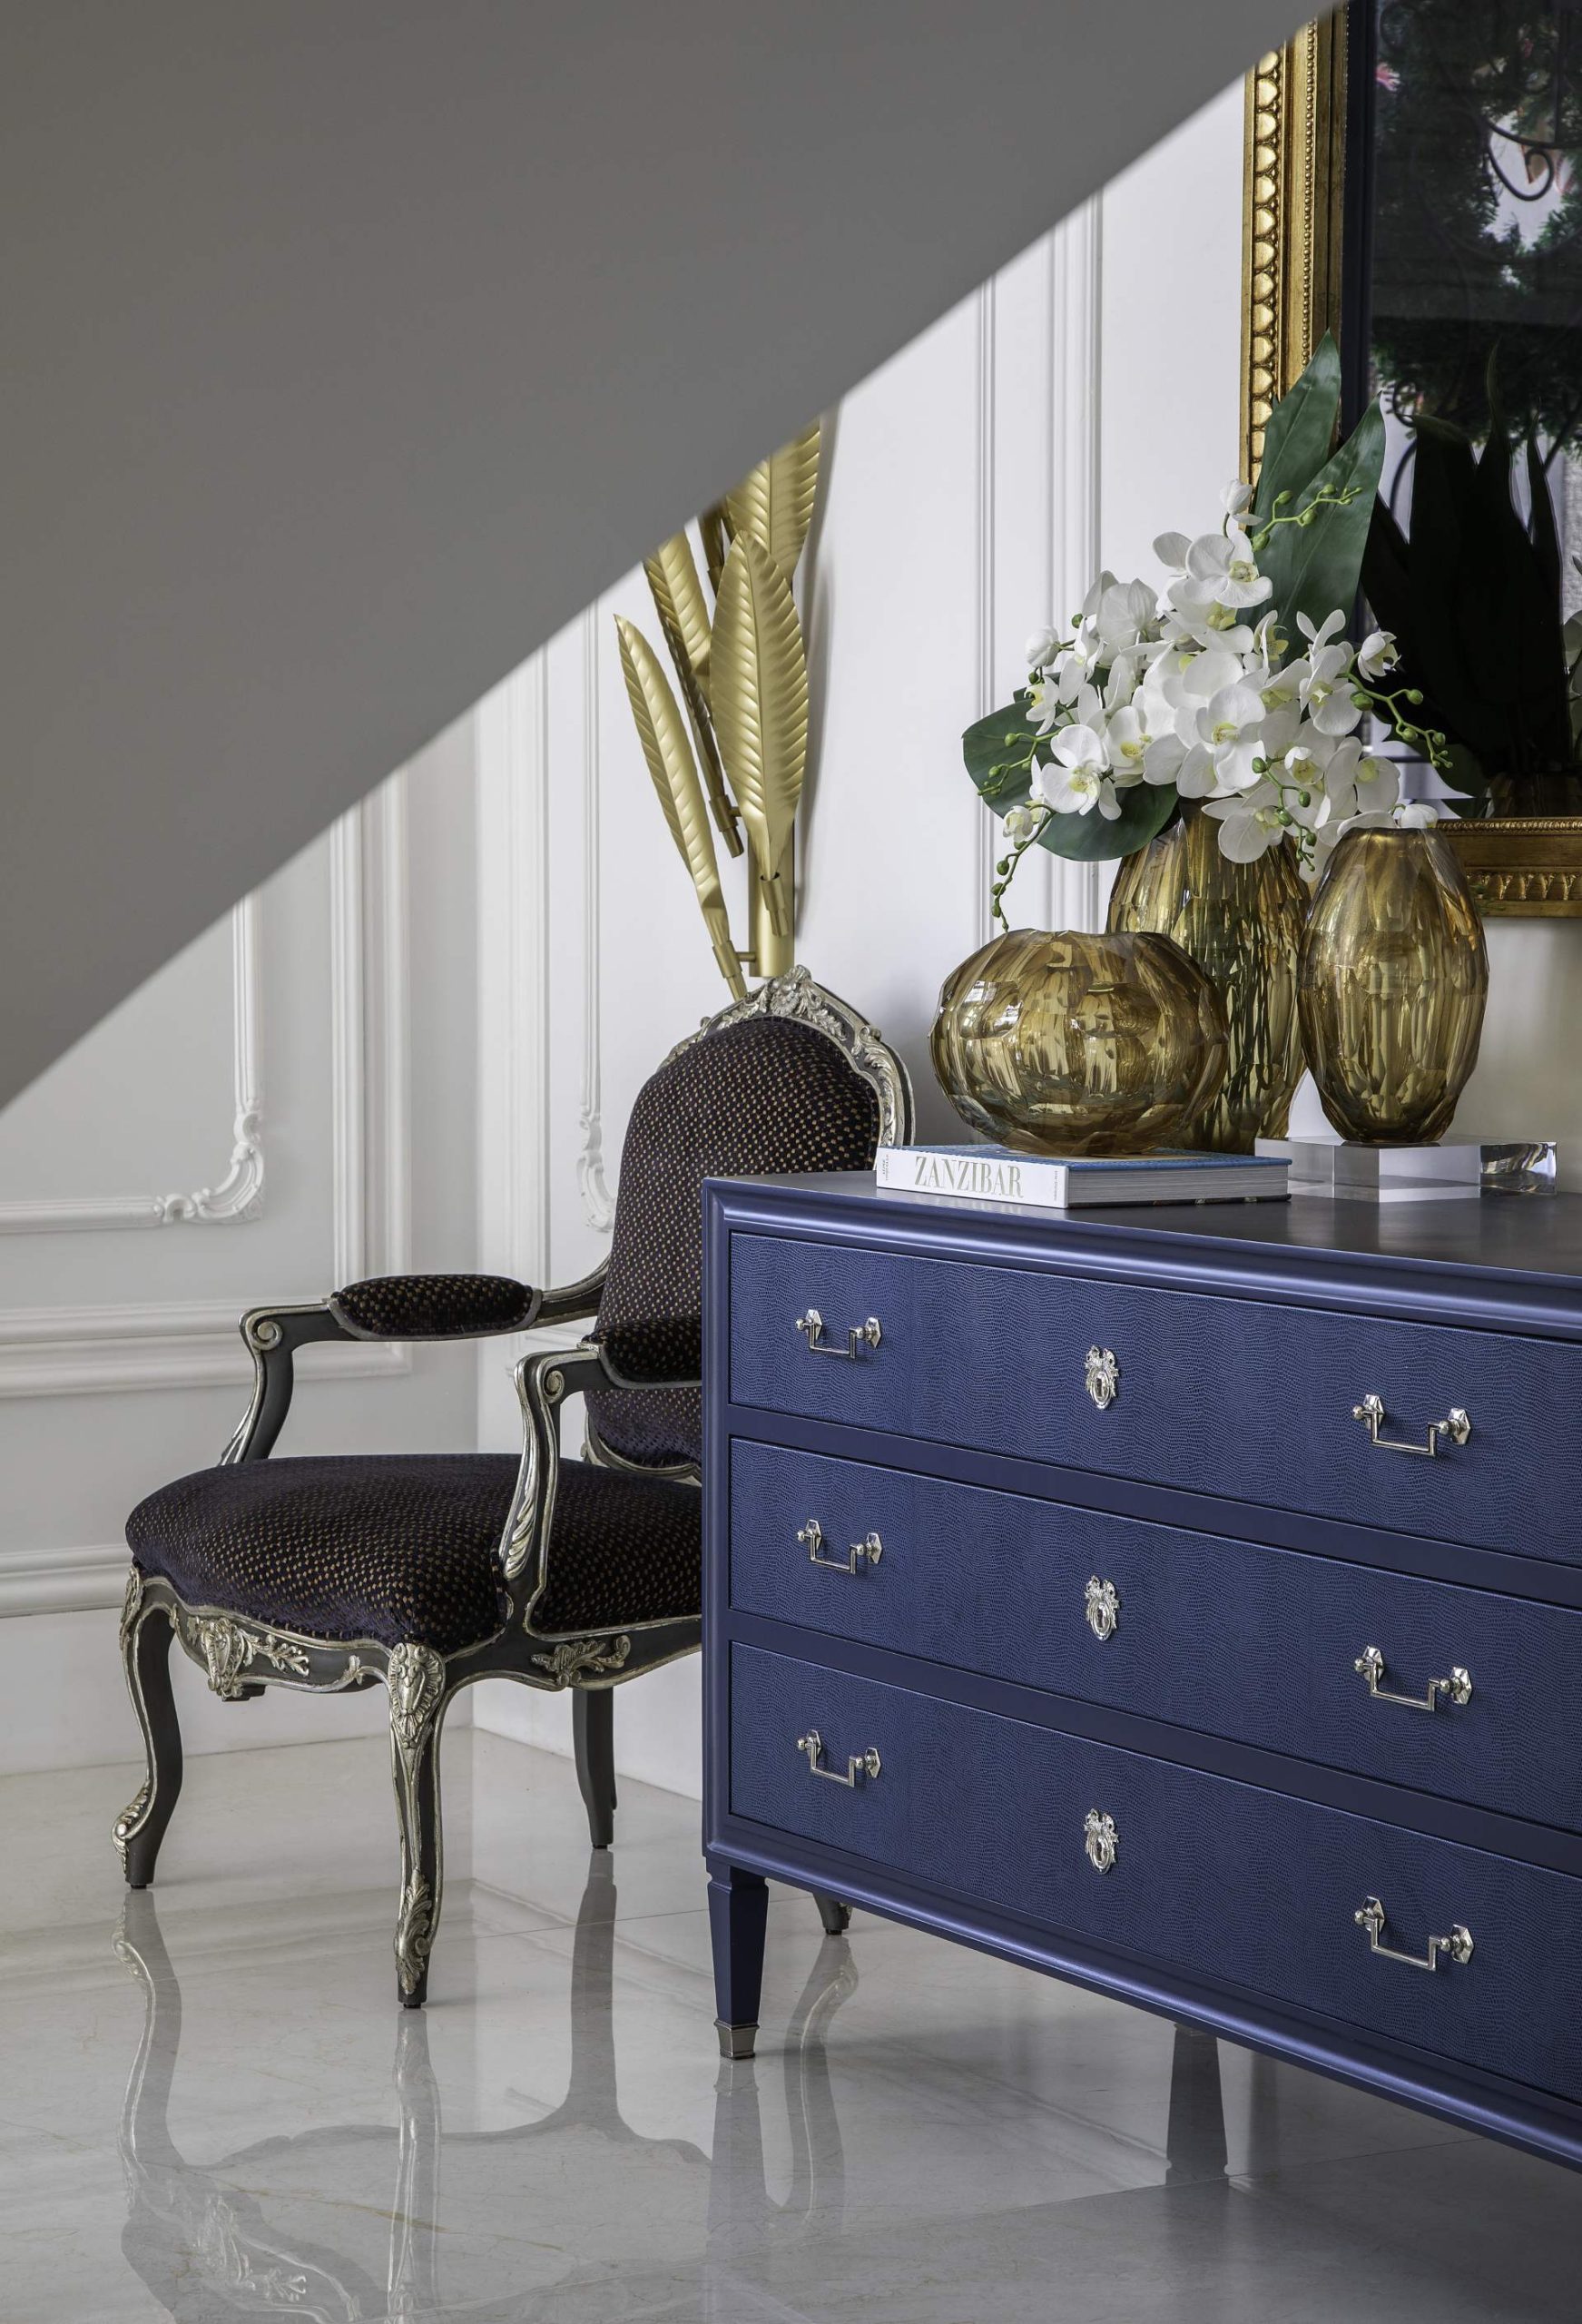 Cadeira, cômoda azul e objetos de decoração dourado compõe espaço para leitura.